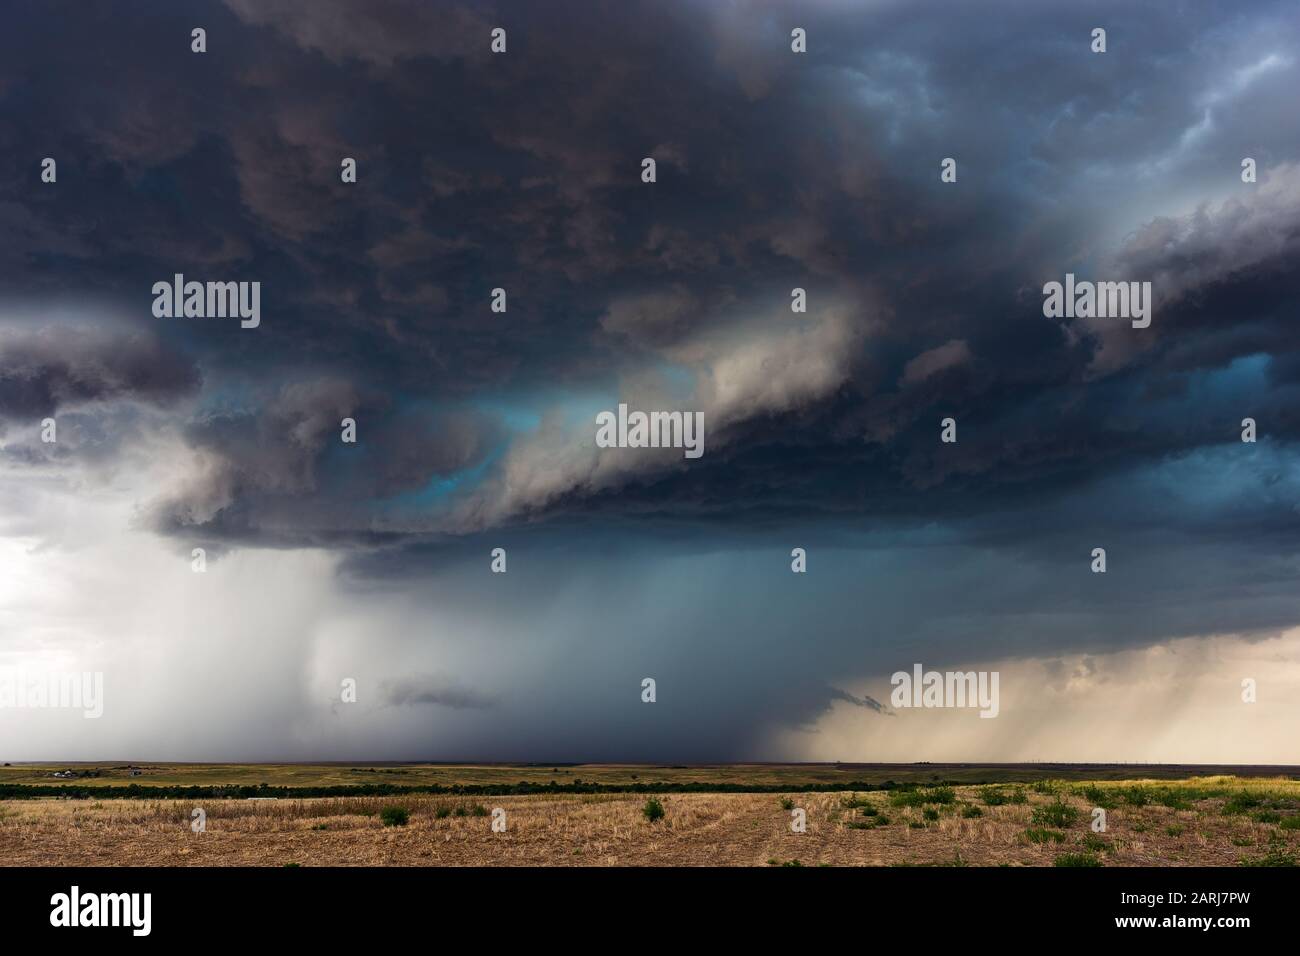 Dramatische Sturmwolken und ein leuchtender türkisfarbener Hagelkern führen zu einem schweren Gewitter in den Ebenen im Osten Colorados Stockfoto